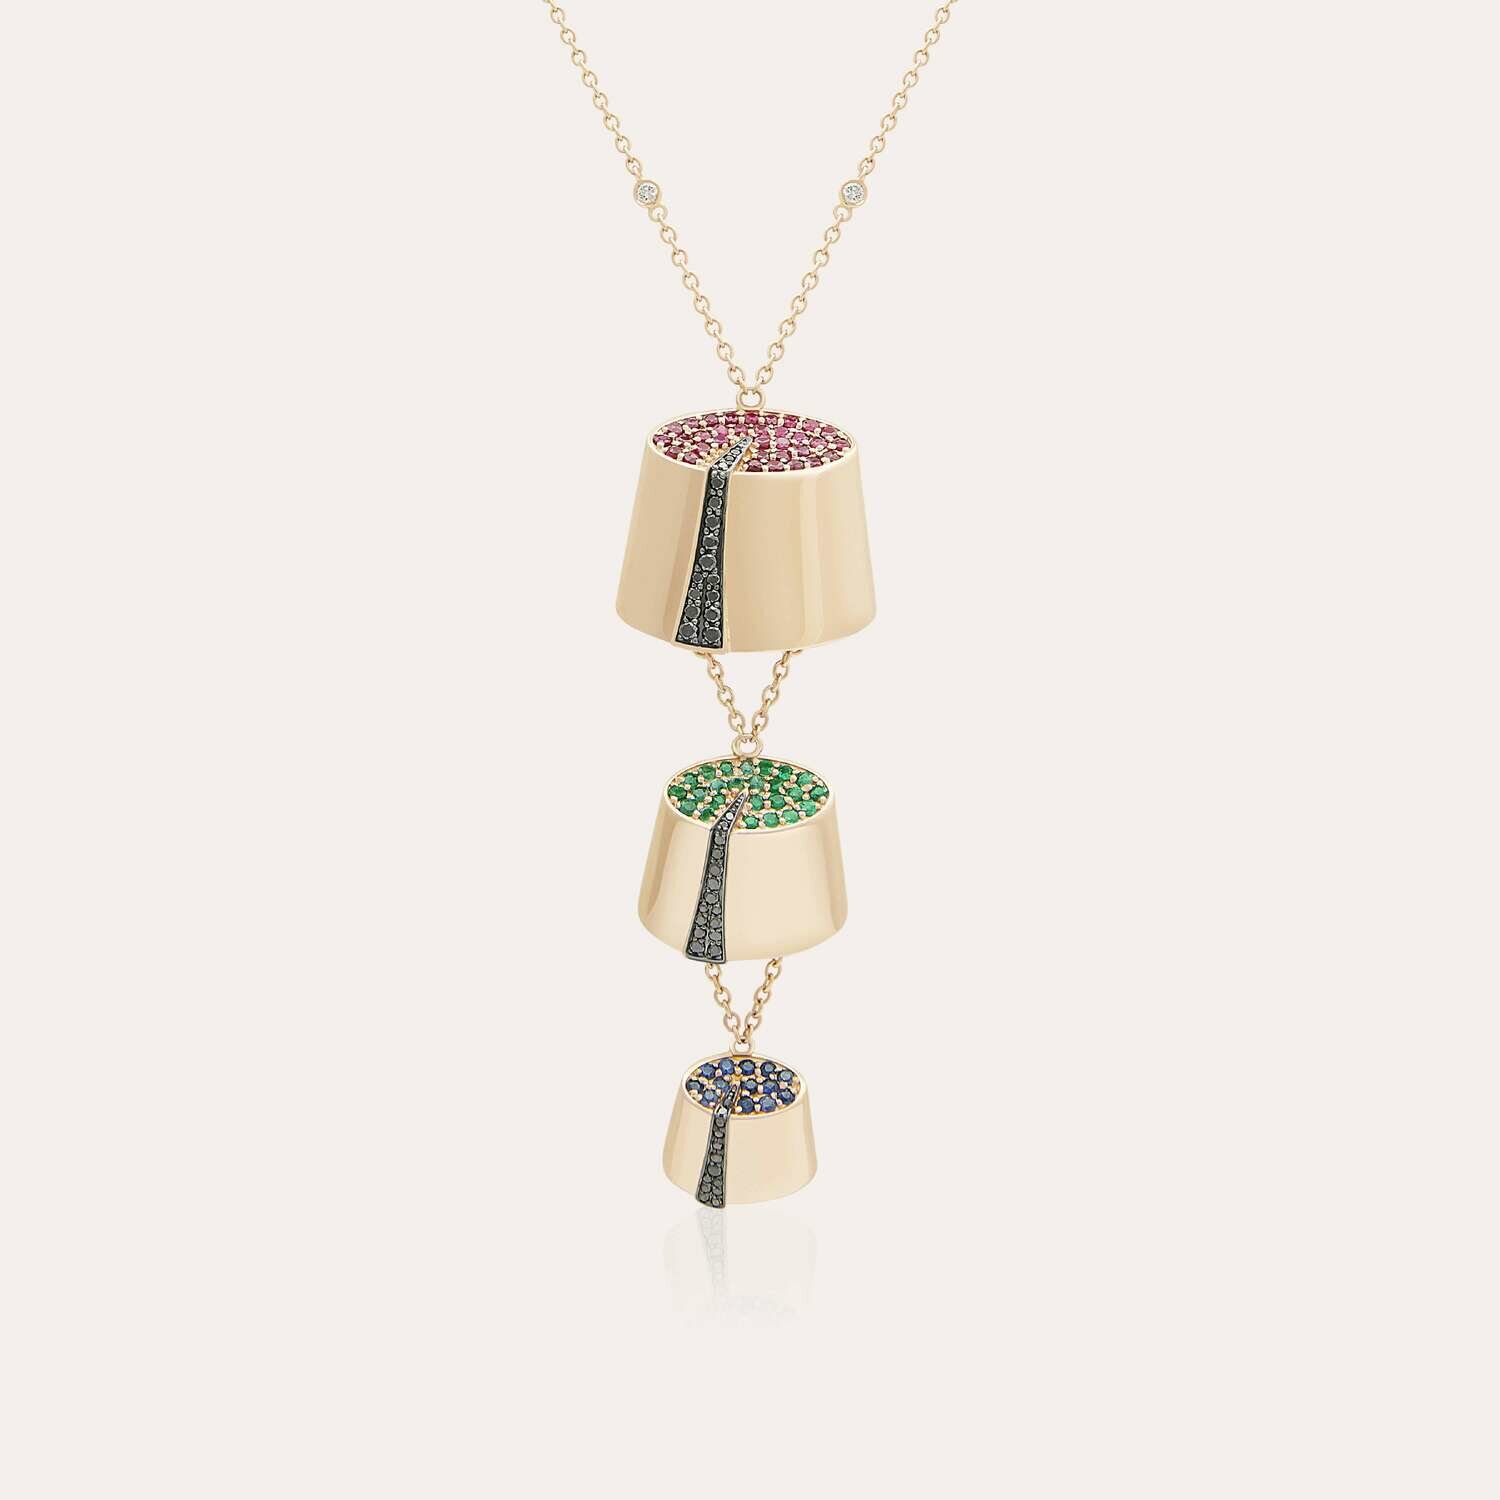 Tarboush Diamond Necklace with Precious Stones